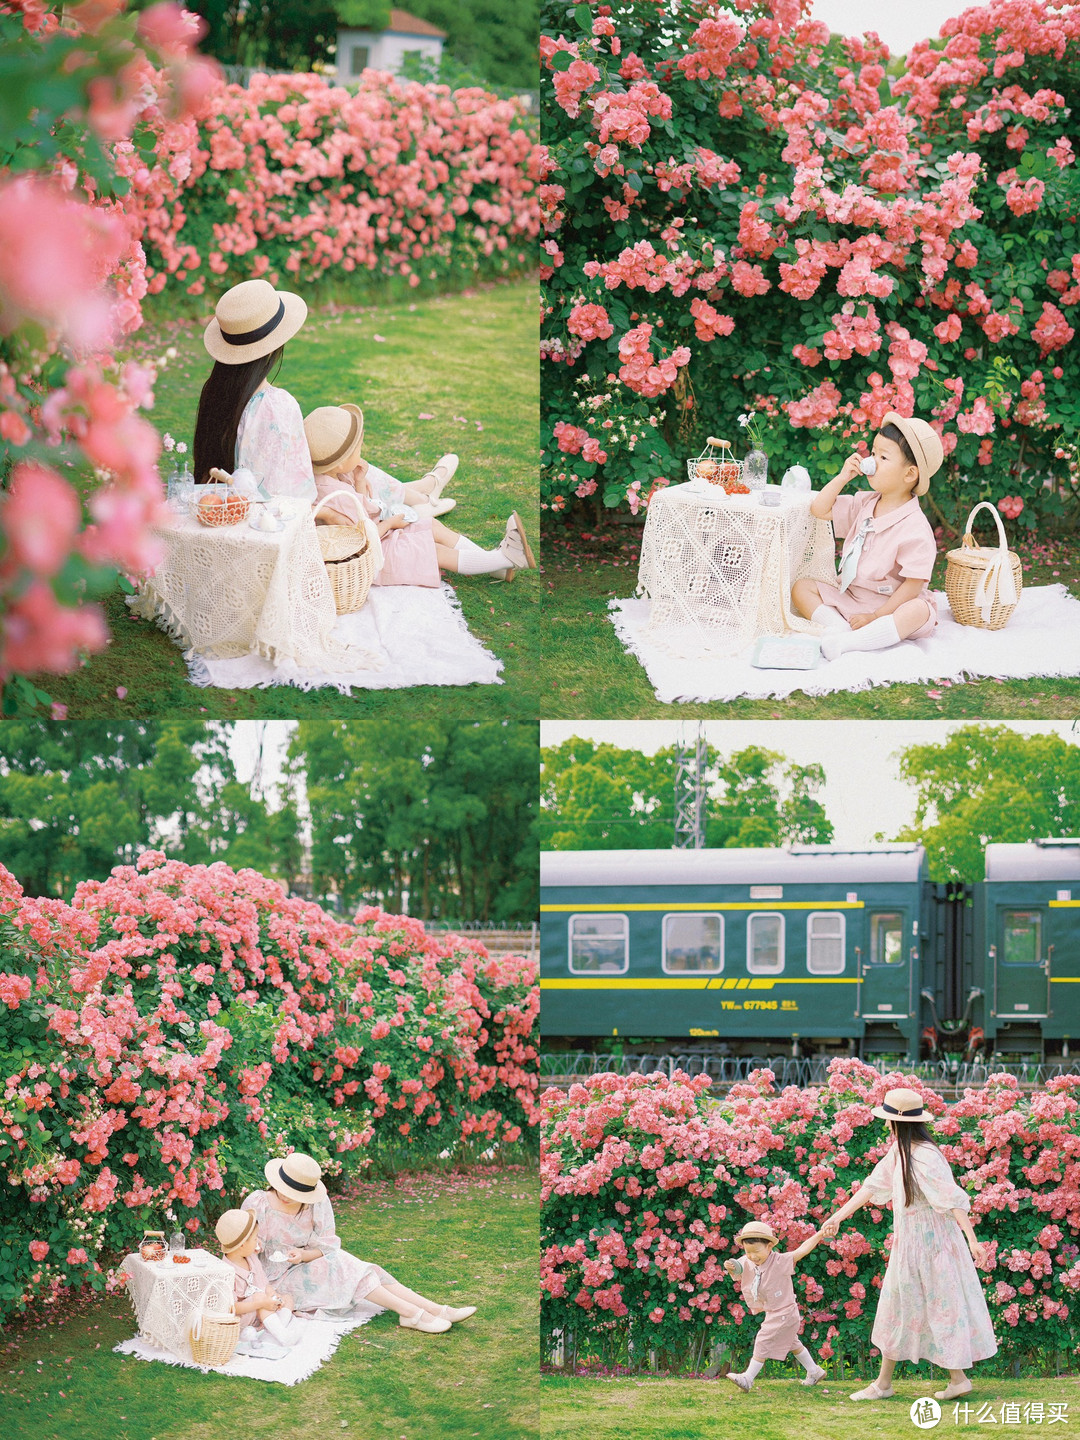 📷拍摄时间：5月12日 📍拍摄地址：嘉兴市嘉善县炮台口南铁路旁蔷薇花墙 等火车开过的时候，可以在蔷薇花墙边和火车合影哦～